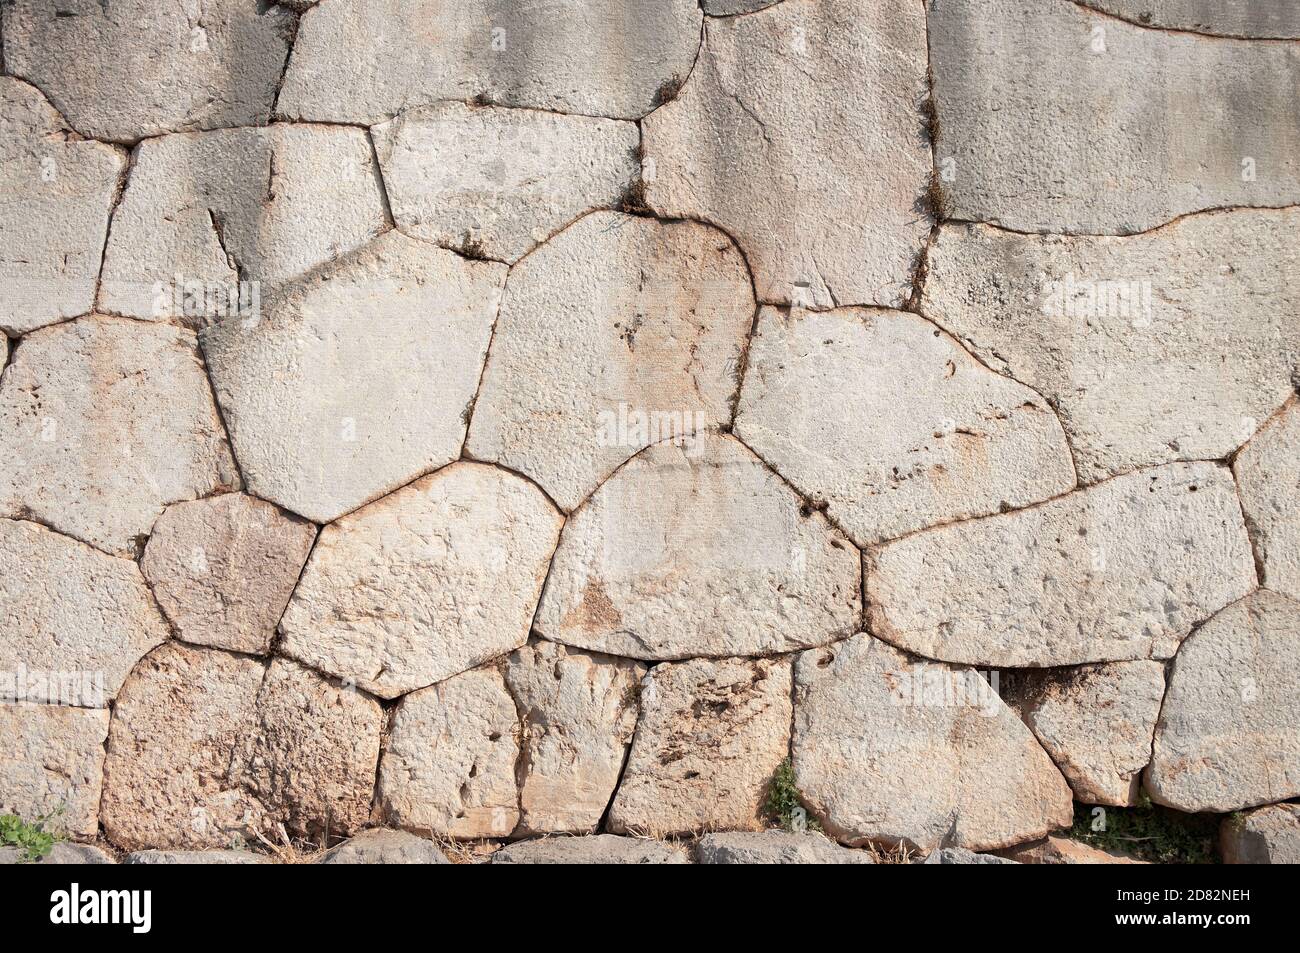 Paroi cyclopéenne d'oracle Delphi - Grèce - caractérisée par l'utilisation de pierres massives de forme et de taille irrégulières de passage Banque D'Images